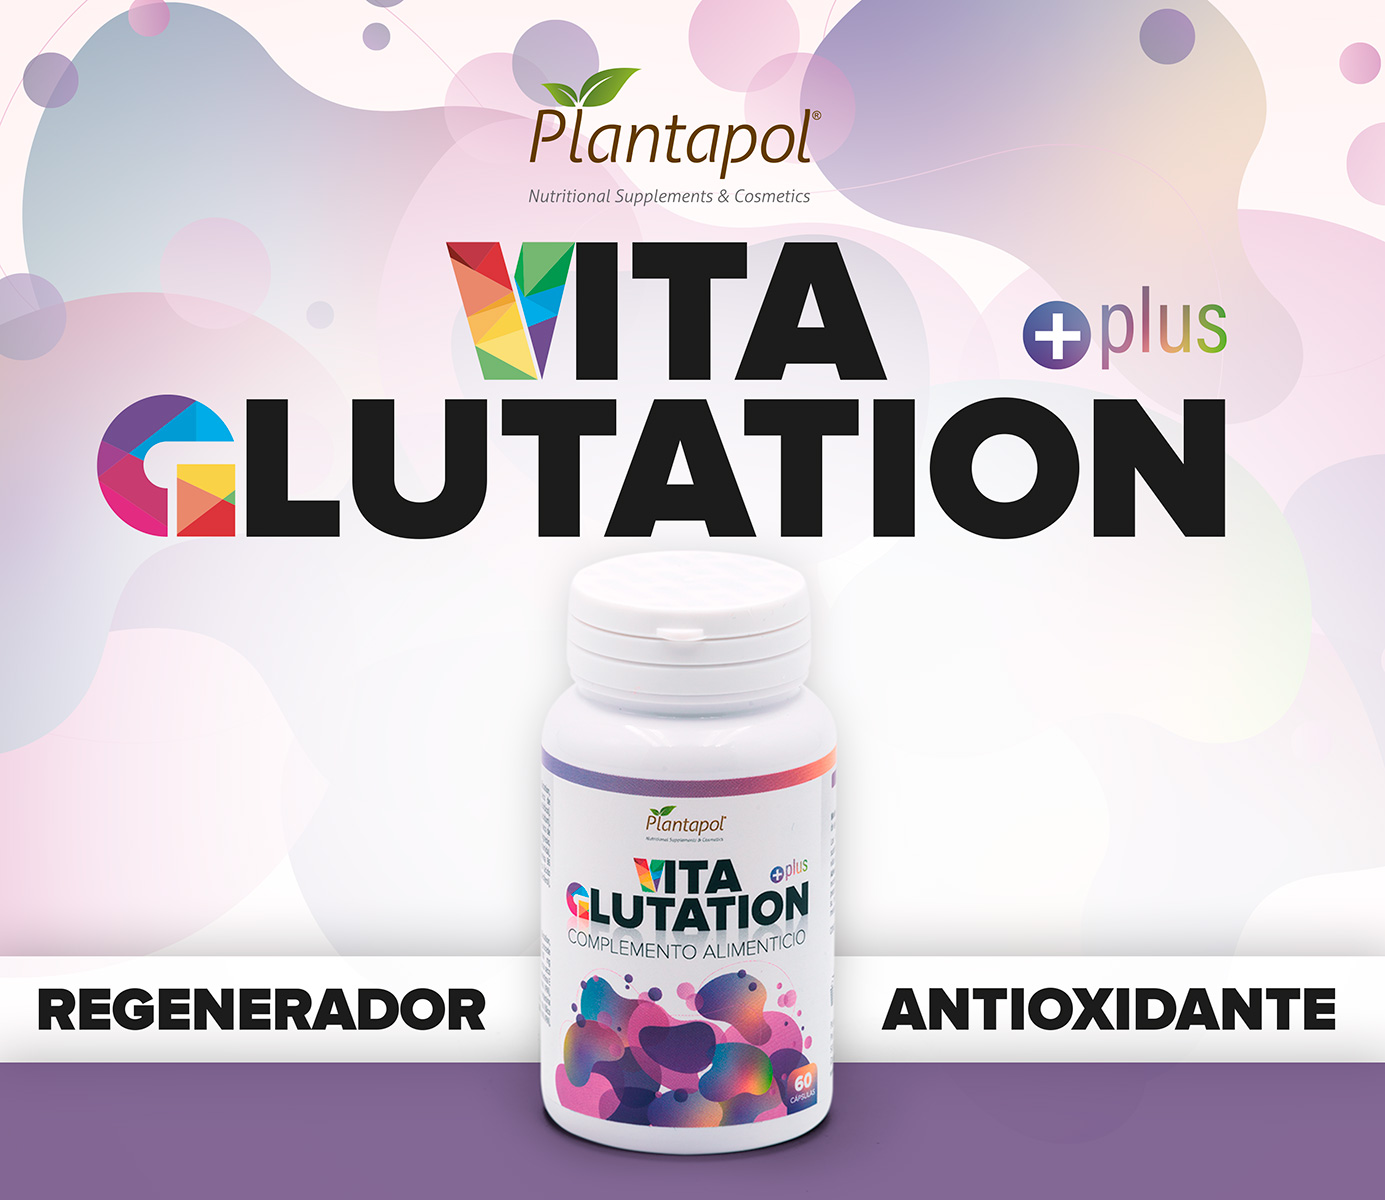 VitaGlutation Plus. Regenerante, antioxidante.